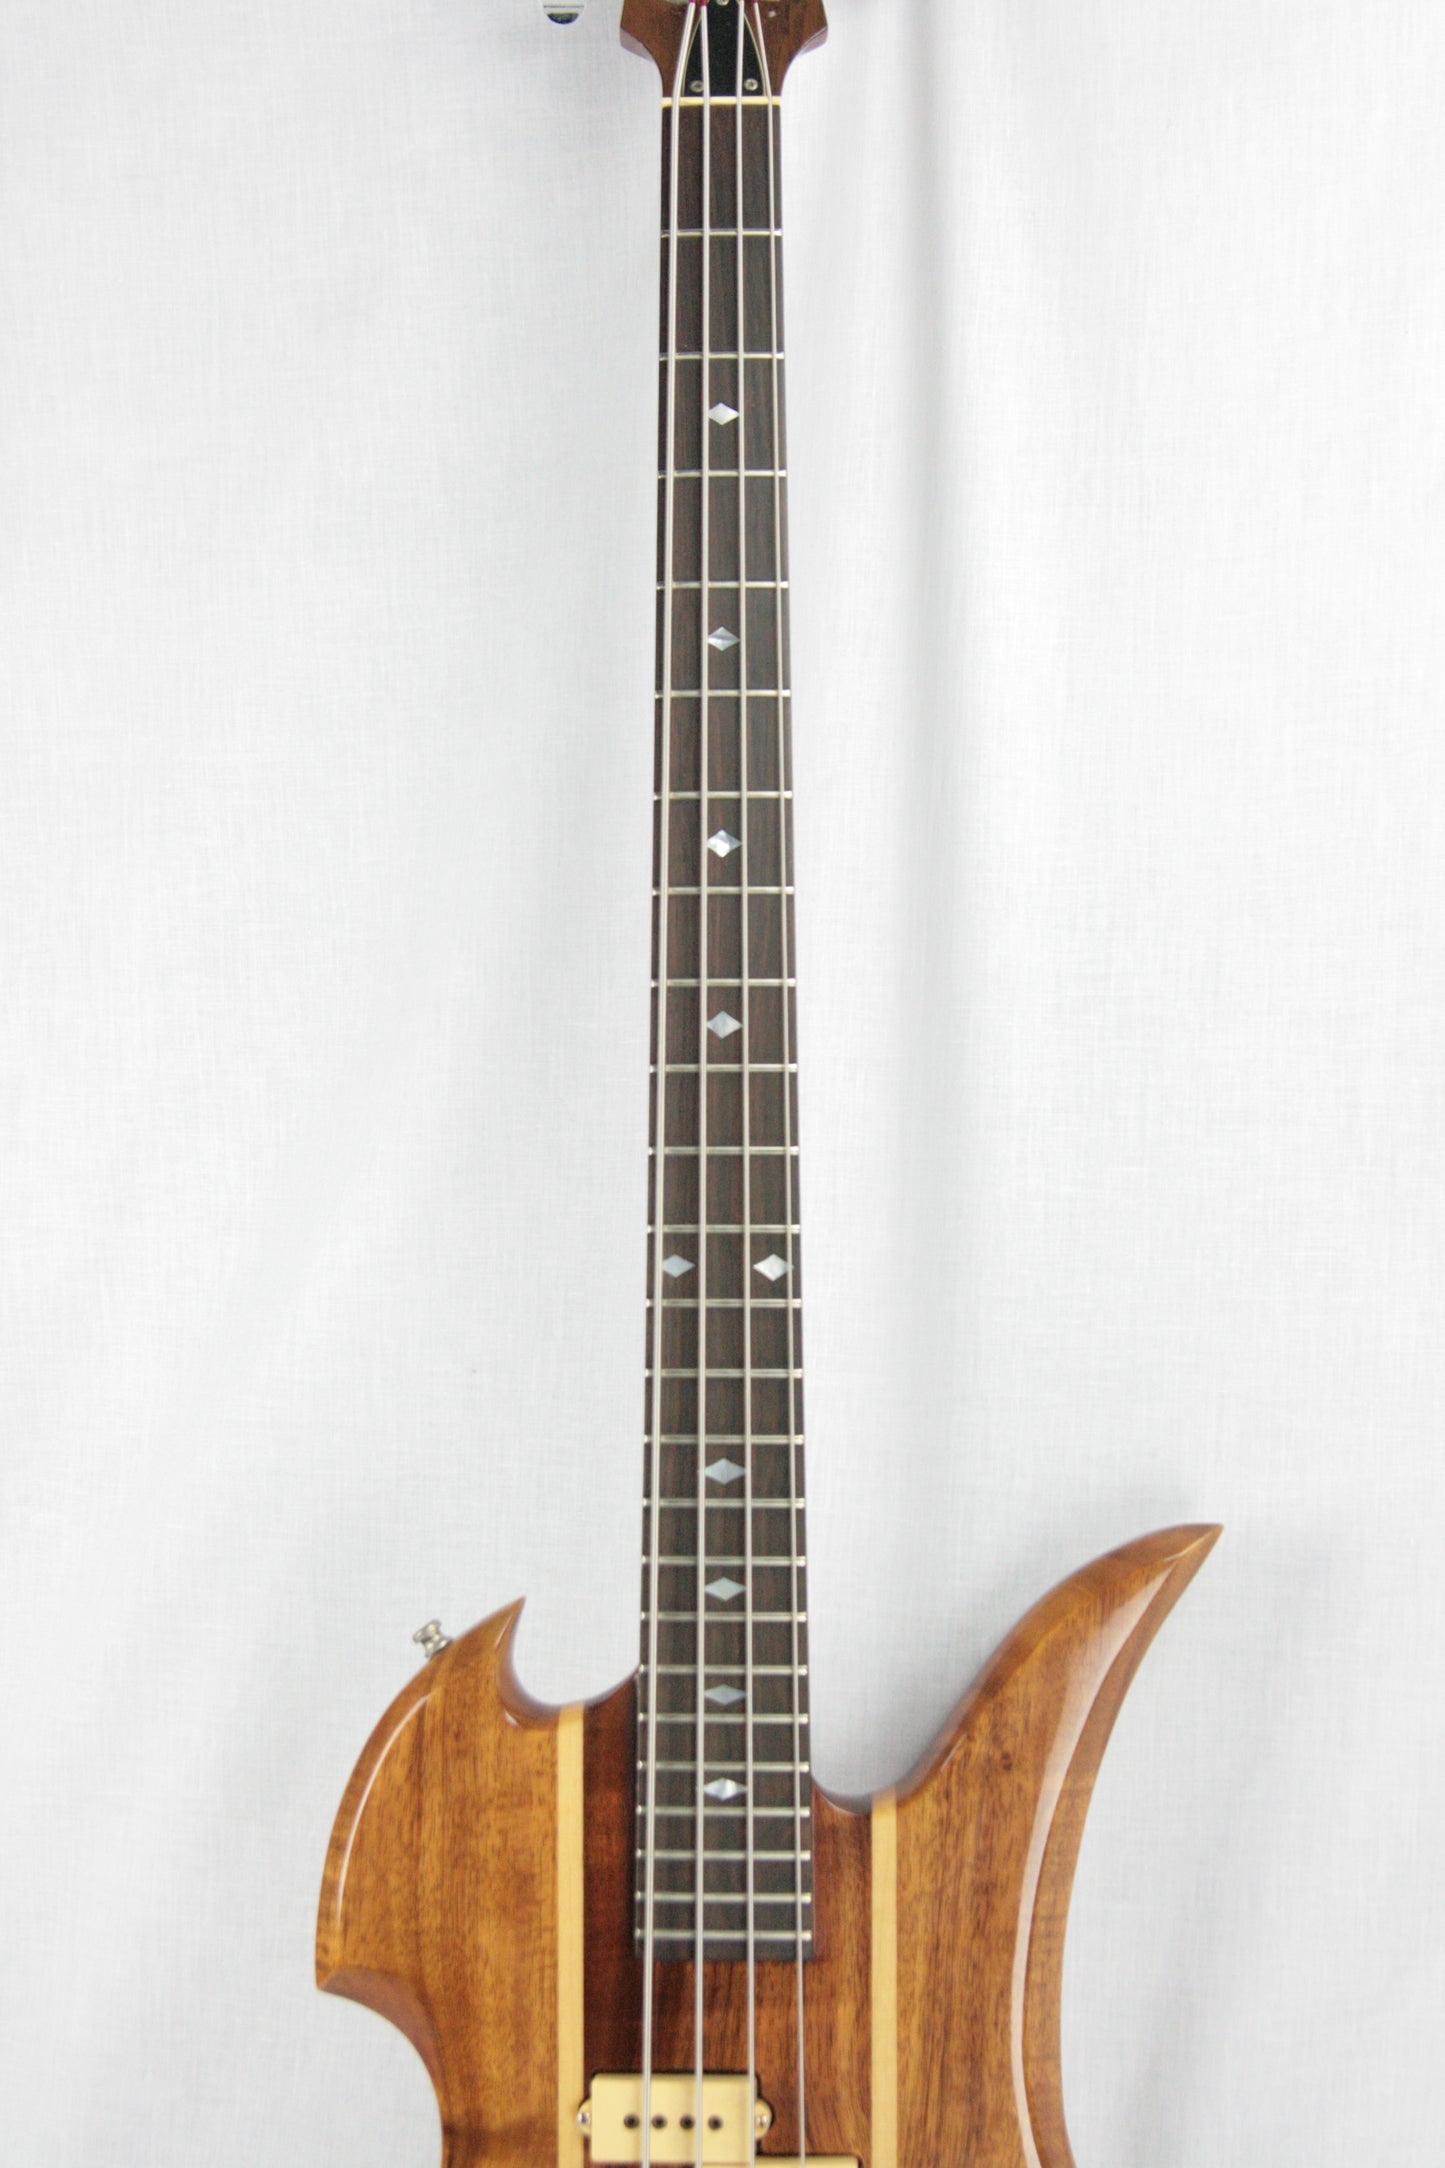 c. 1981 BC Rich USA Mockingbird KOA Bass w/ Original Case! Collector-Grade!